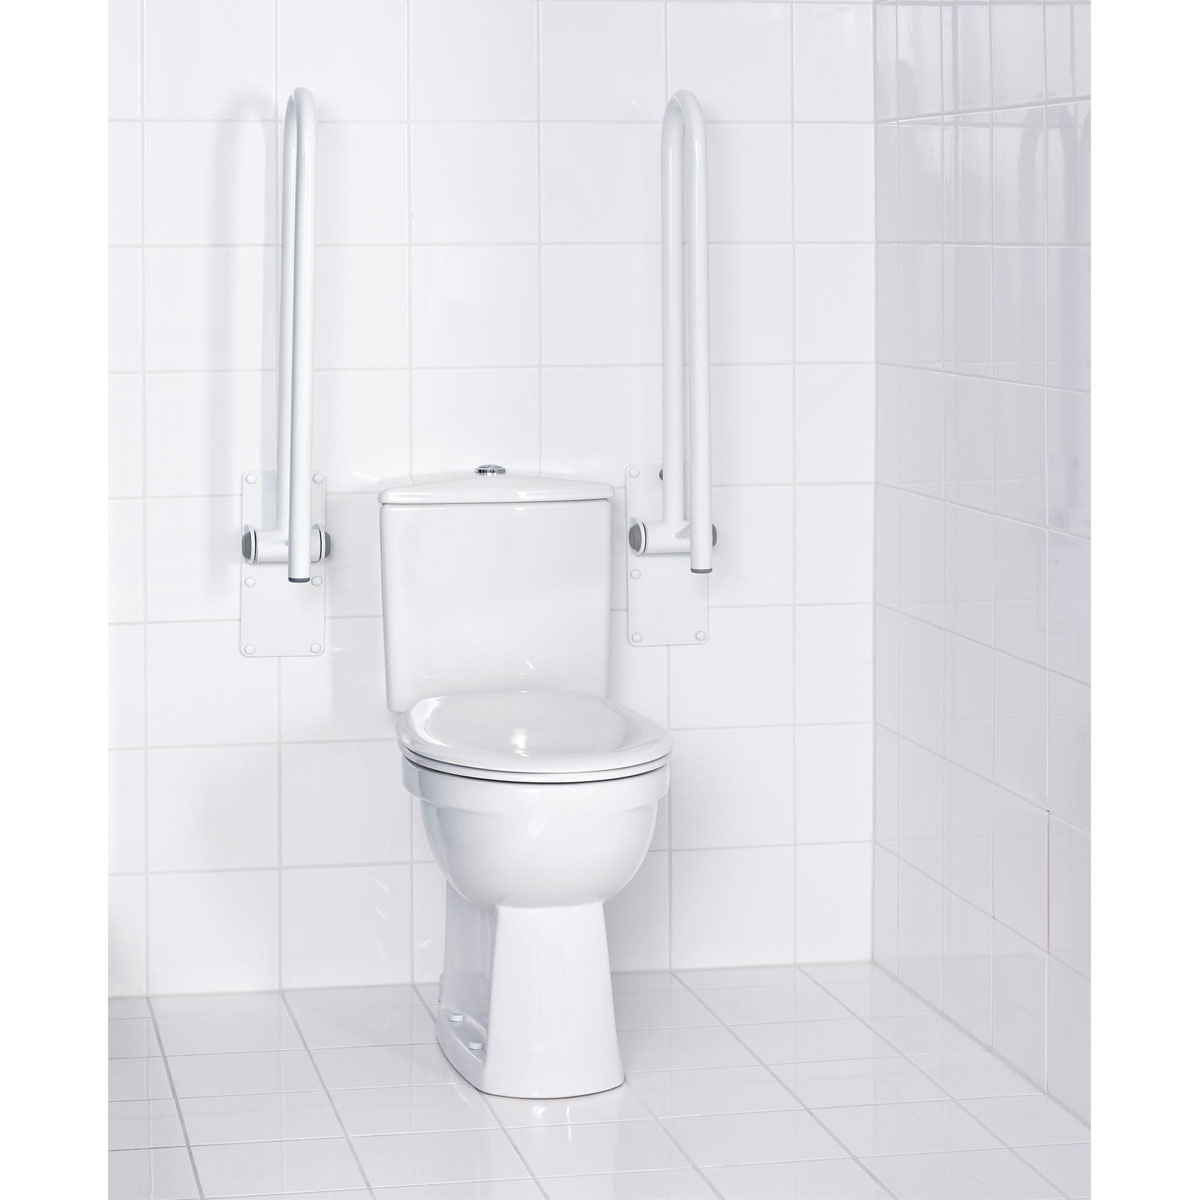 Ridder WC-Aufstehbügel 76 cm | 543088 klappbar weiß